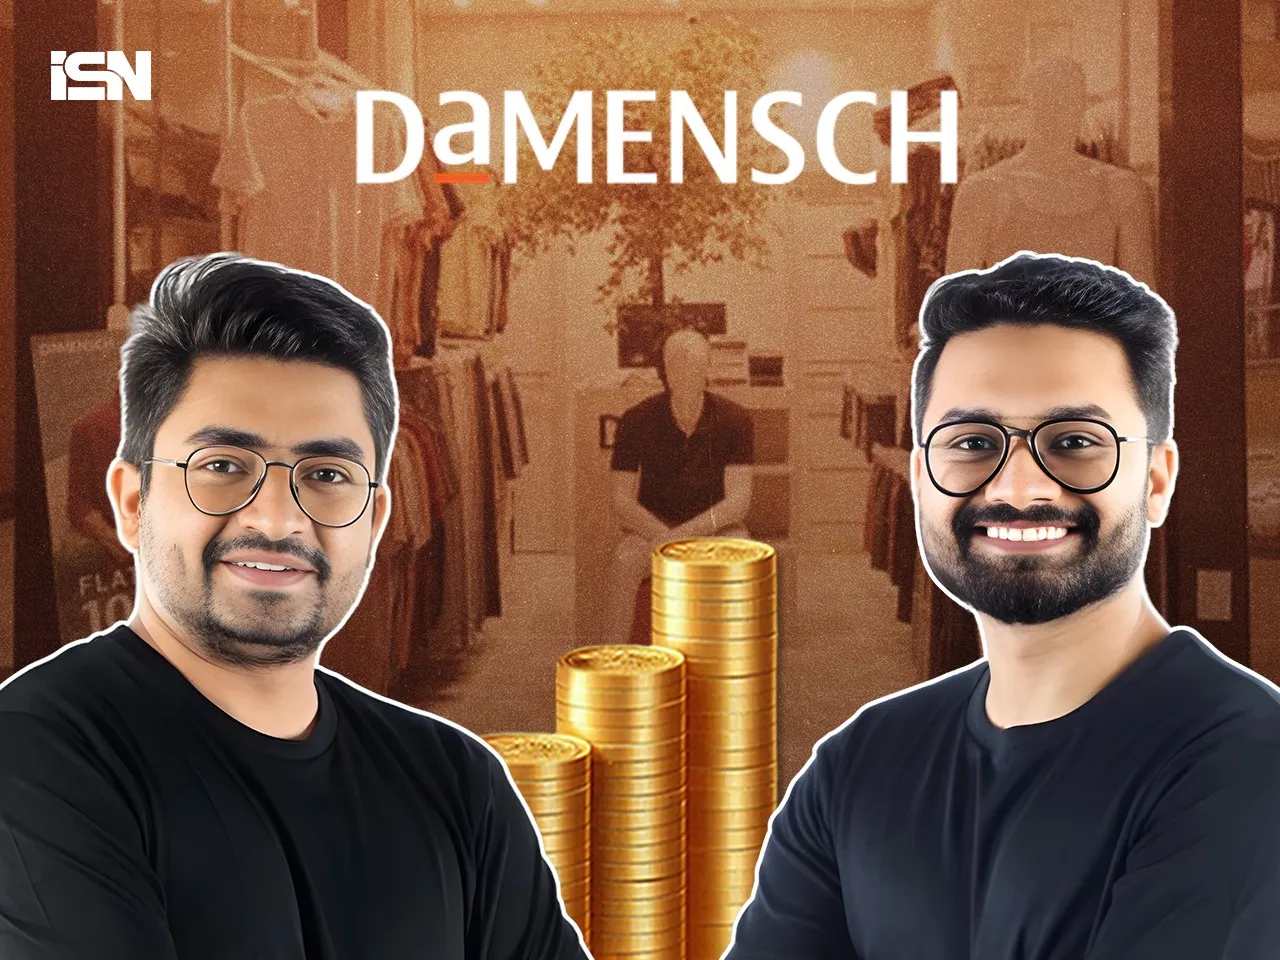 DaMENSCH raises funding